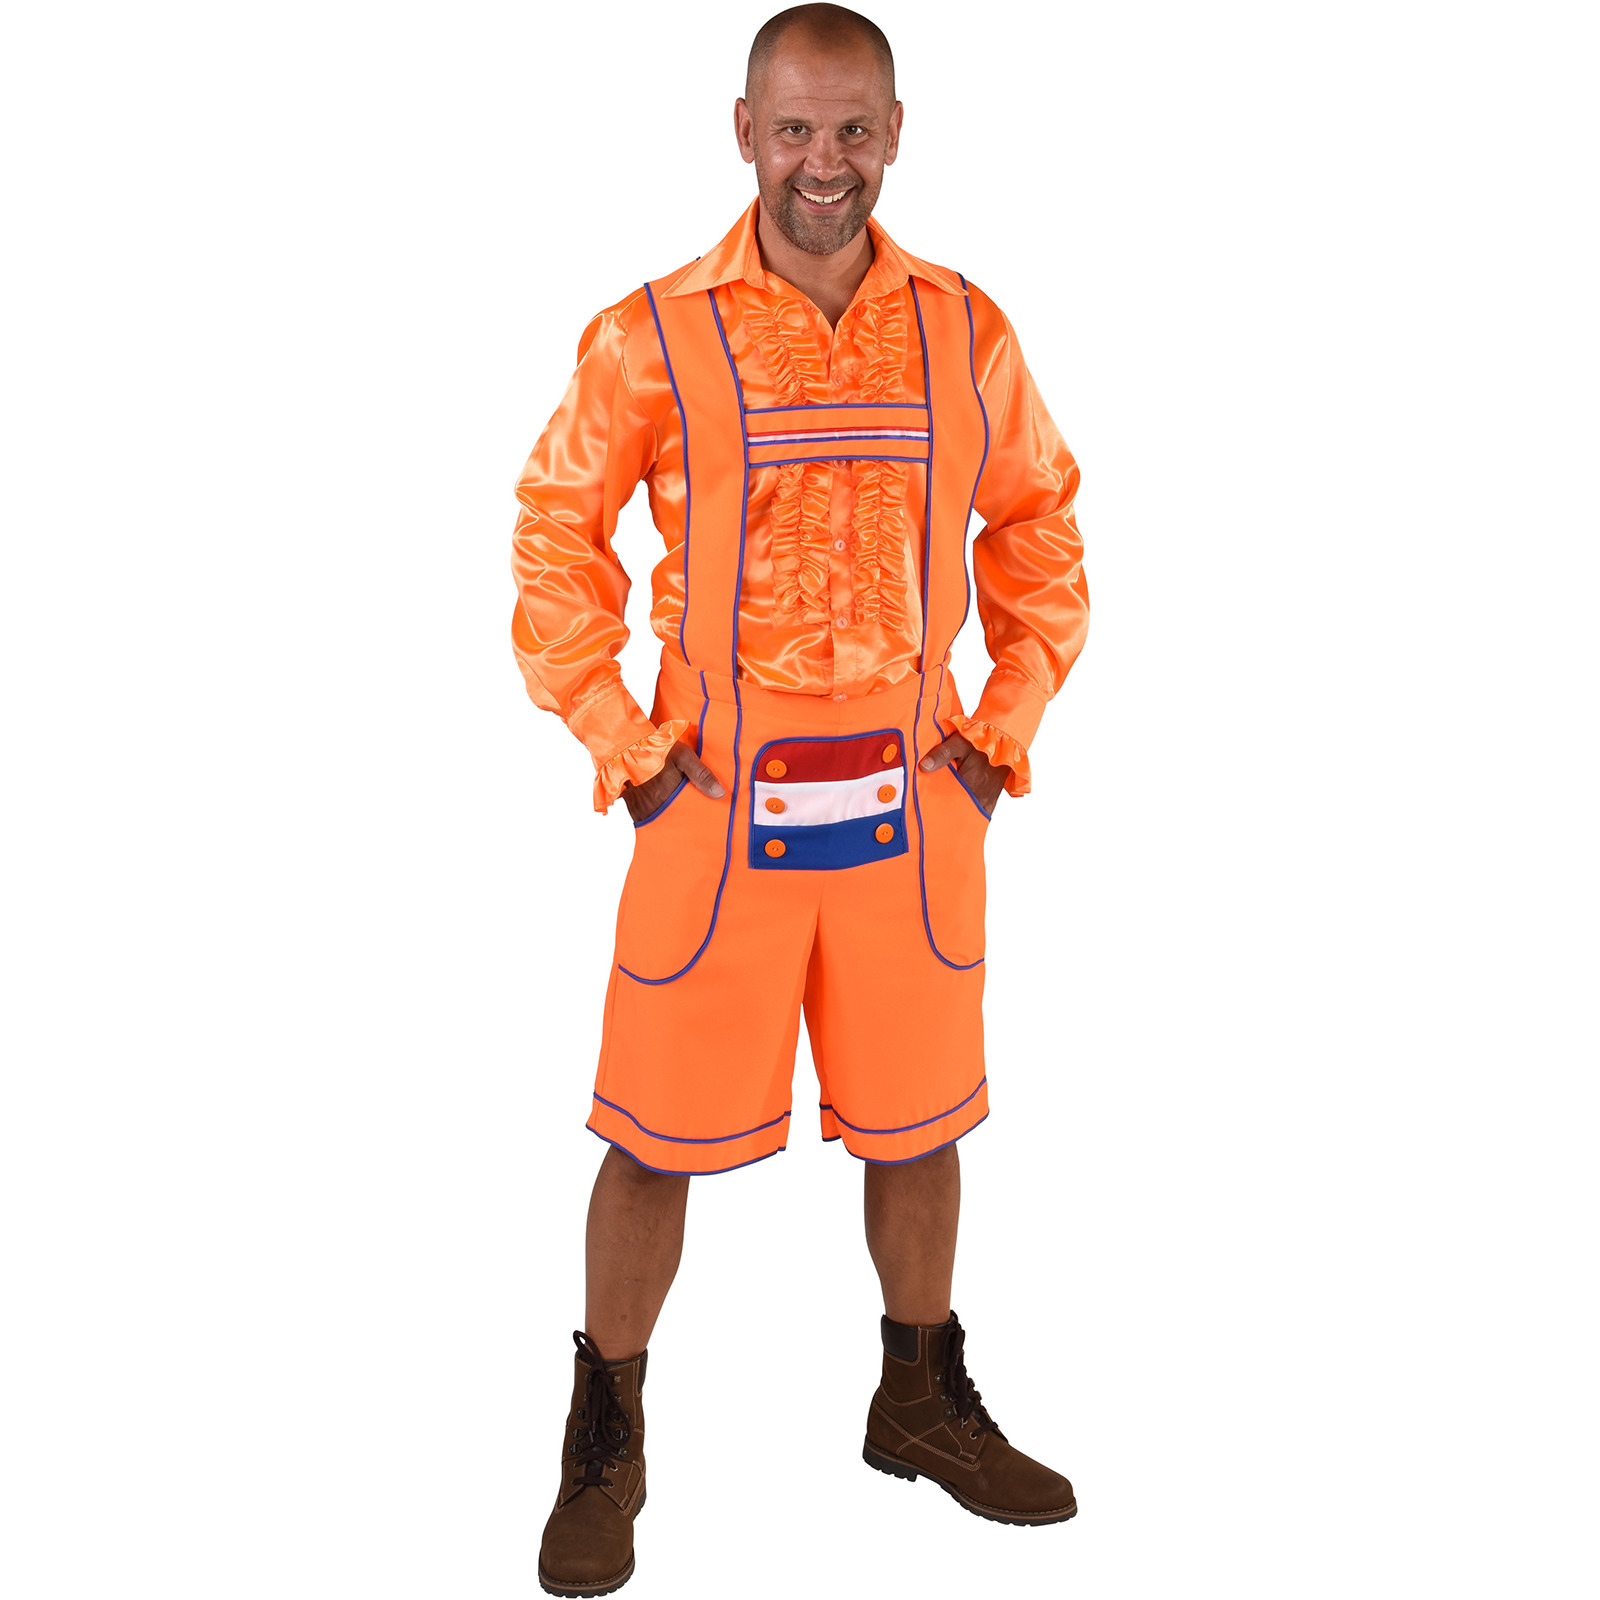 Oktoberfest - Oranje Tiroler broek - lederhosen verkleedkleding